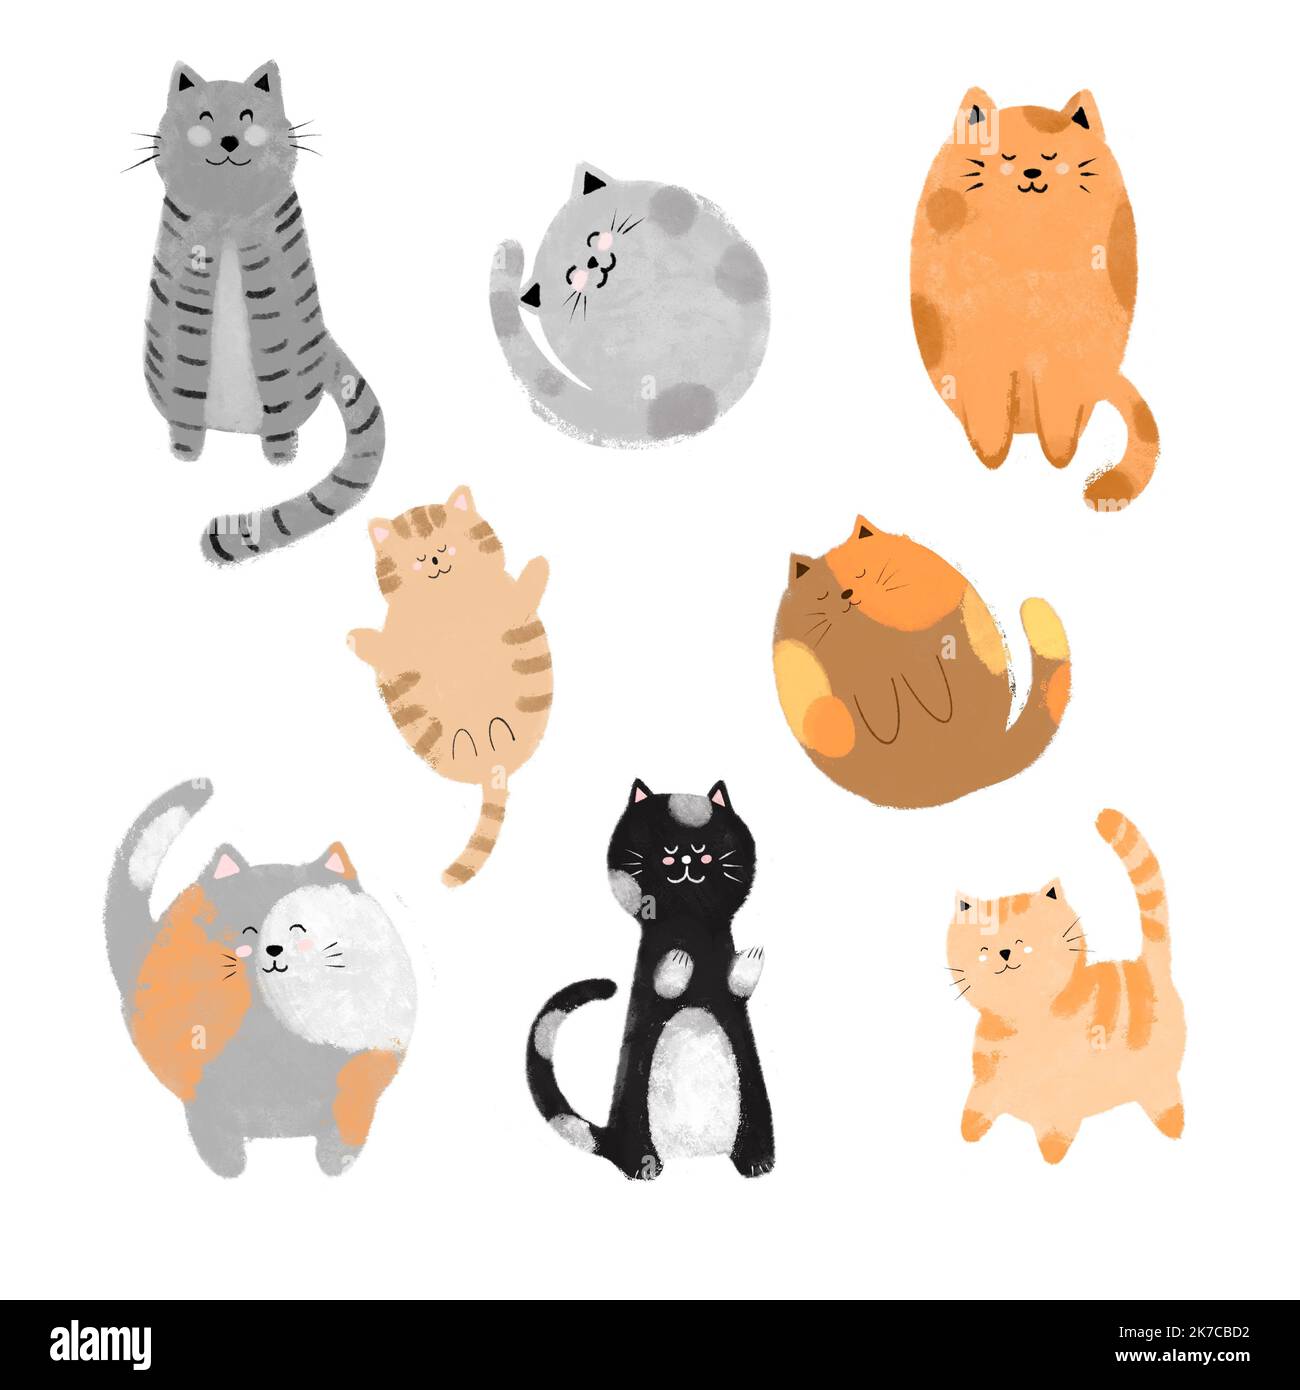 Carino e divertente gatto doodle mano disegnata illustrazione. Cartoni animati gatto o cucciolo design collezione di personaggi con colore piatto in diverse pose Foto Stock